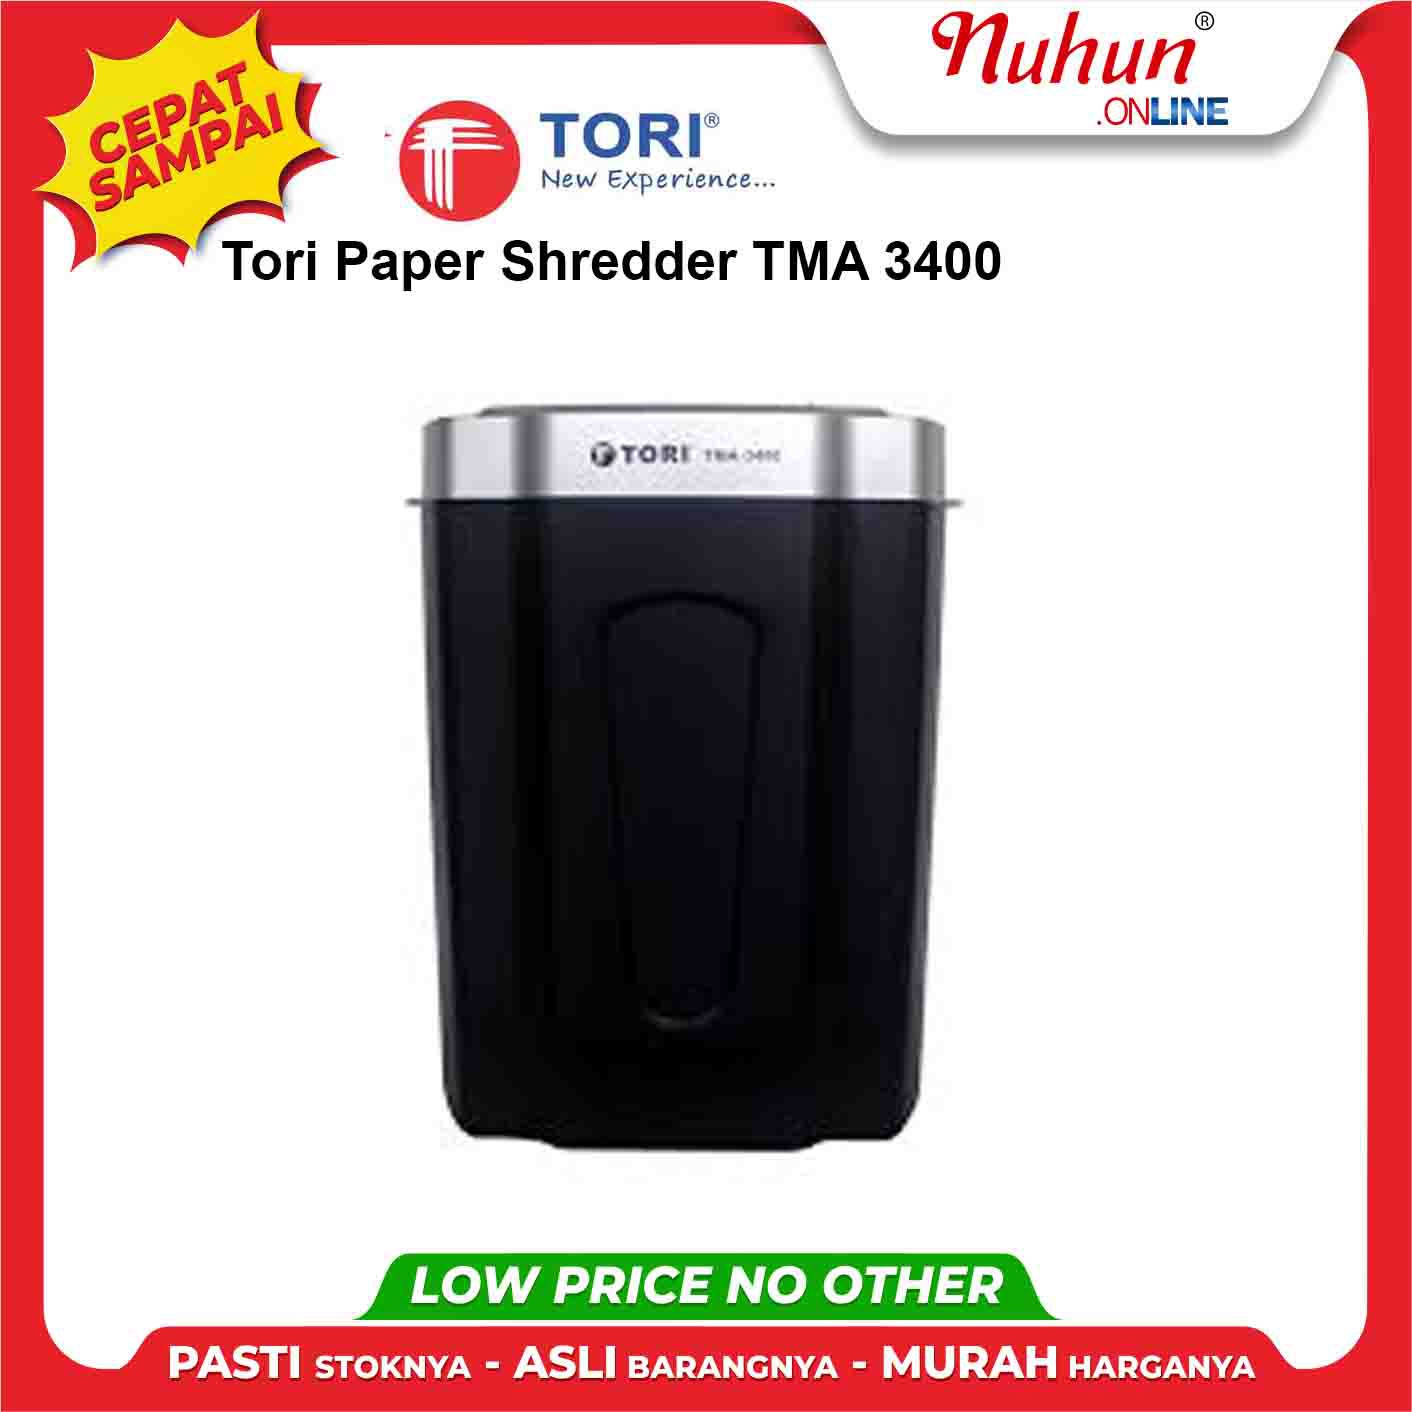 Tori Paper Shredder TMA 3400